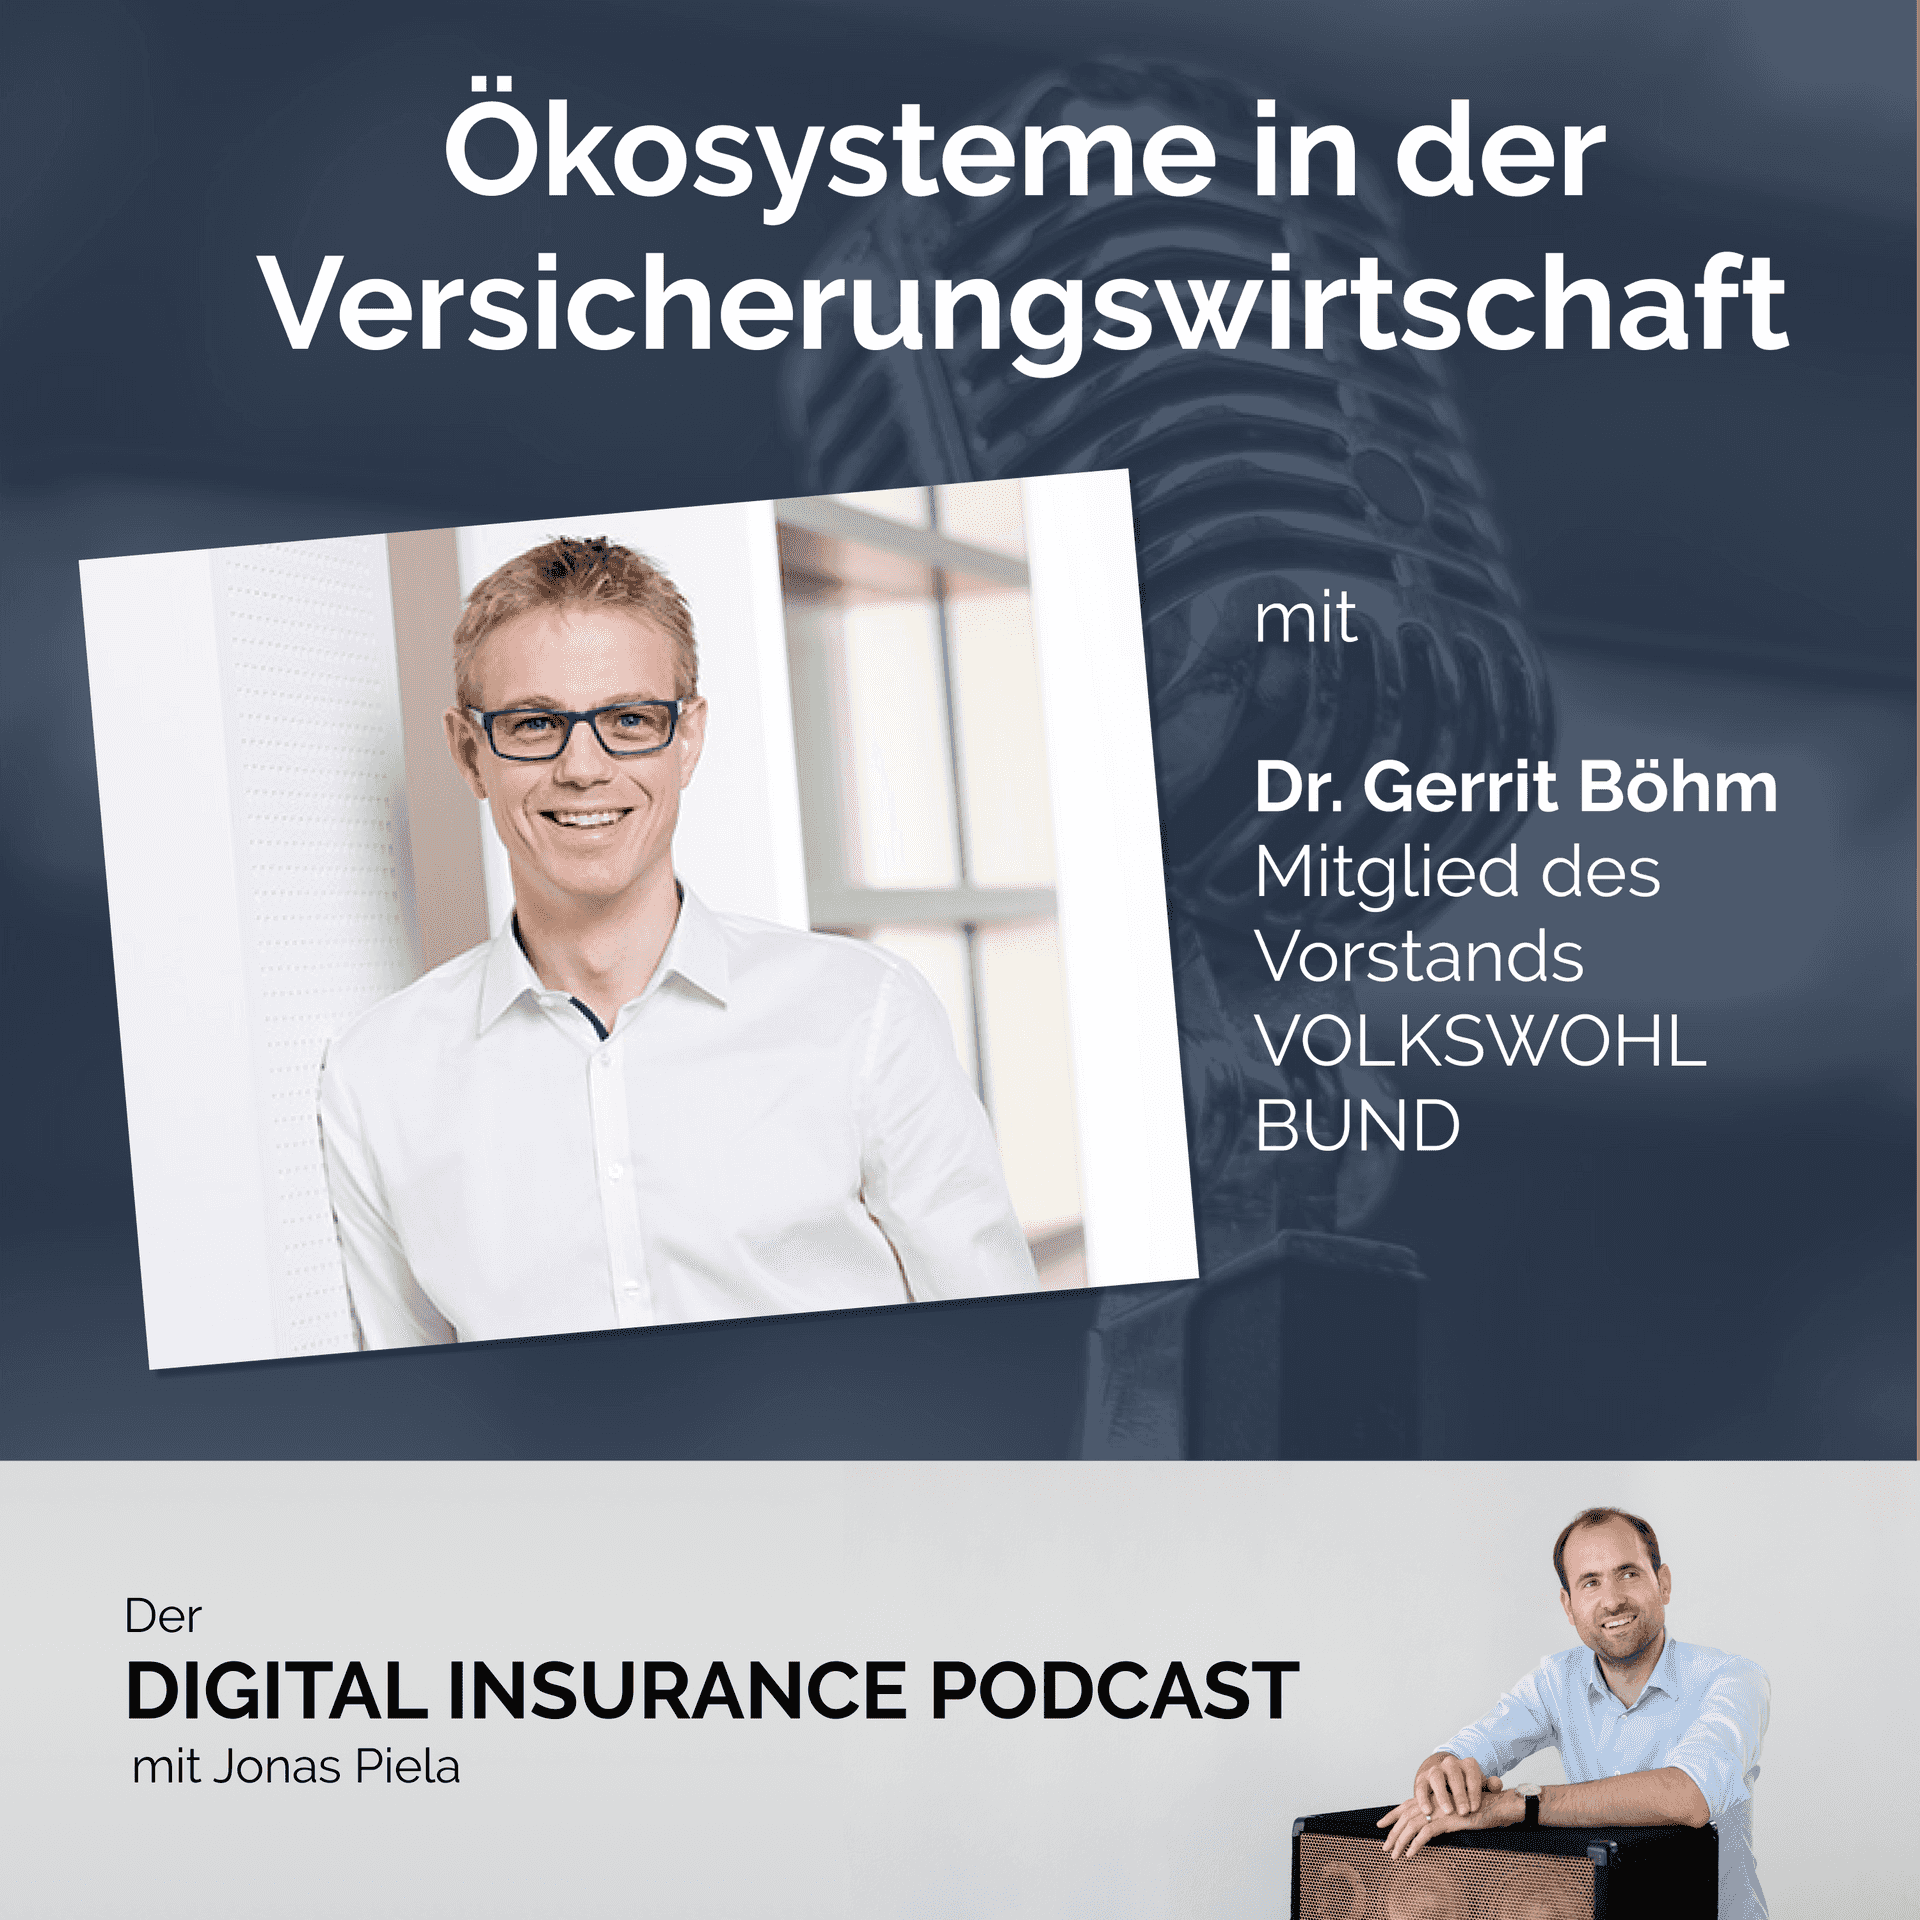 Ökosysteme in der Versicherungswirtschaft mit Dr. Gerrit Böhm